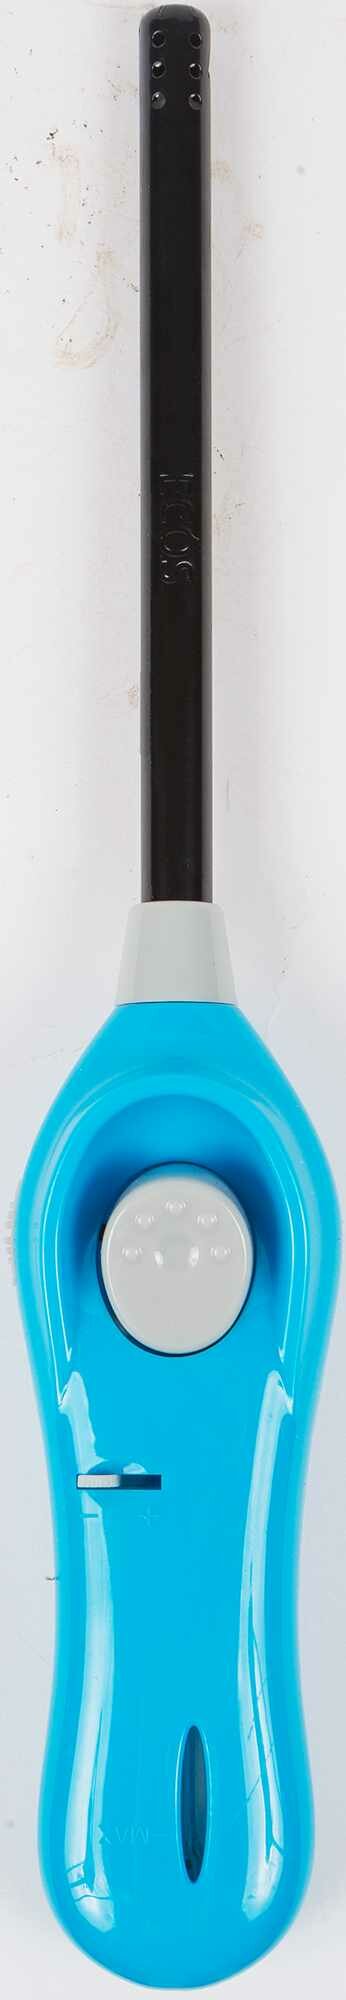 Зажигалка газовая Ecos GL-001B, цвет синий Леруа Мерлен - фото №9